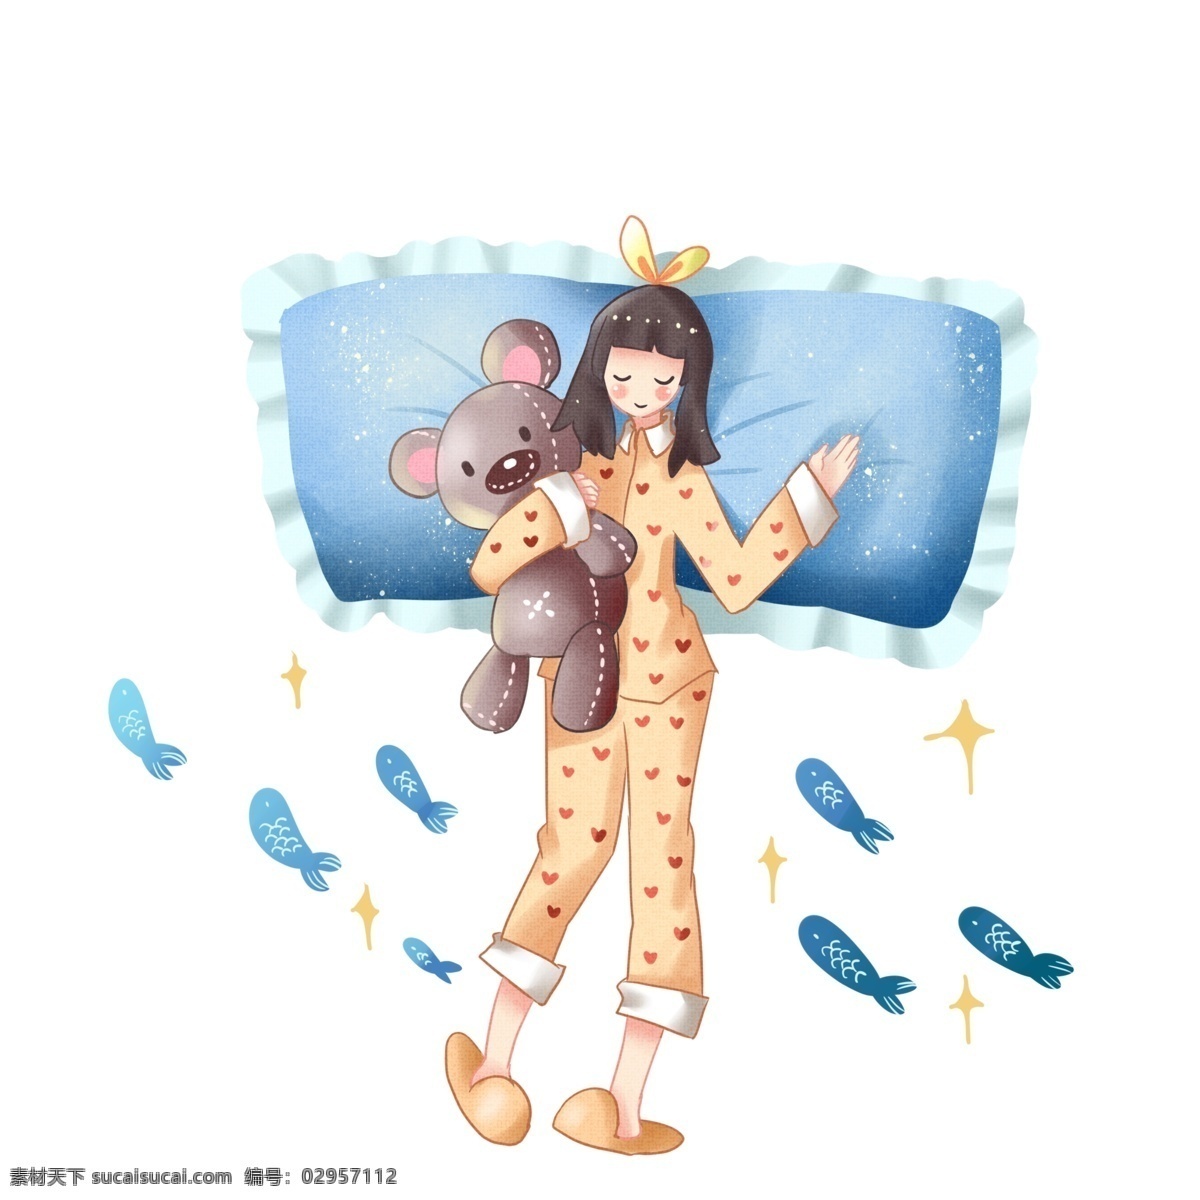 世界 睡眠 日 小 熊 抱着小熊睡觉 世界睡眠日 卡通插画 睡觉 睡眠的插画 瞌睡 休息 蓝色的枕头